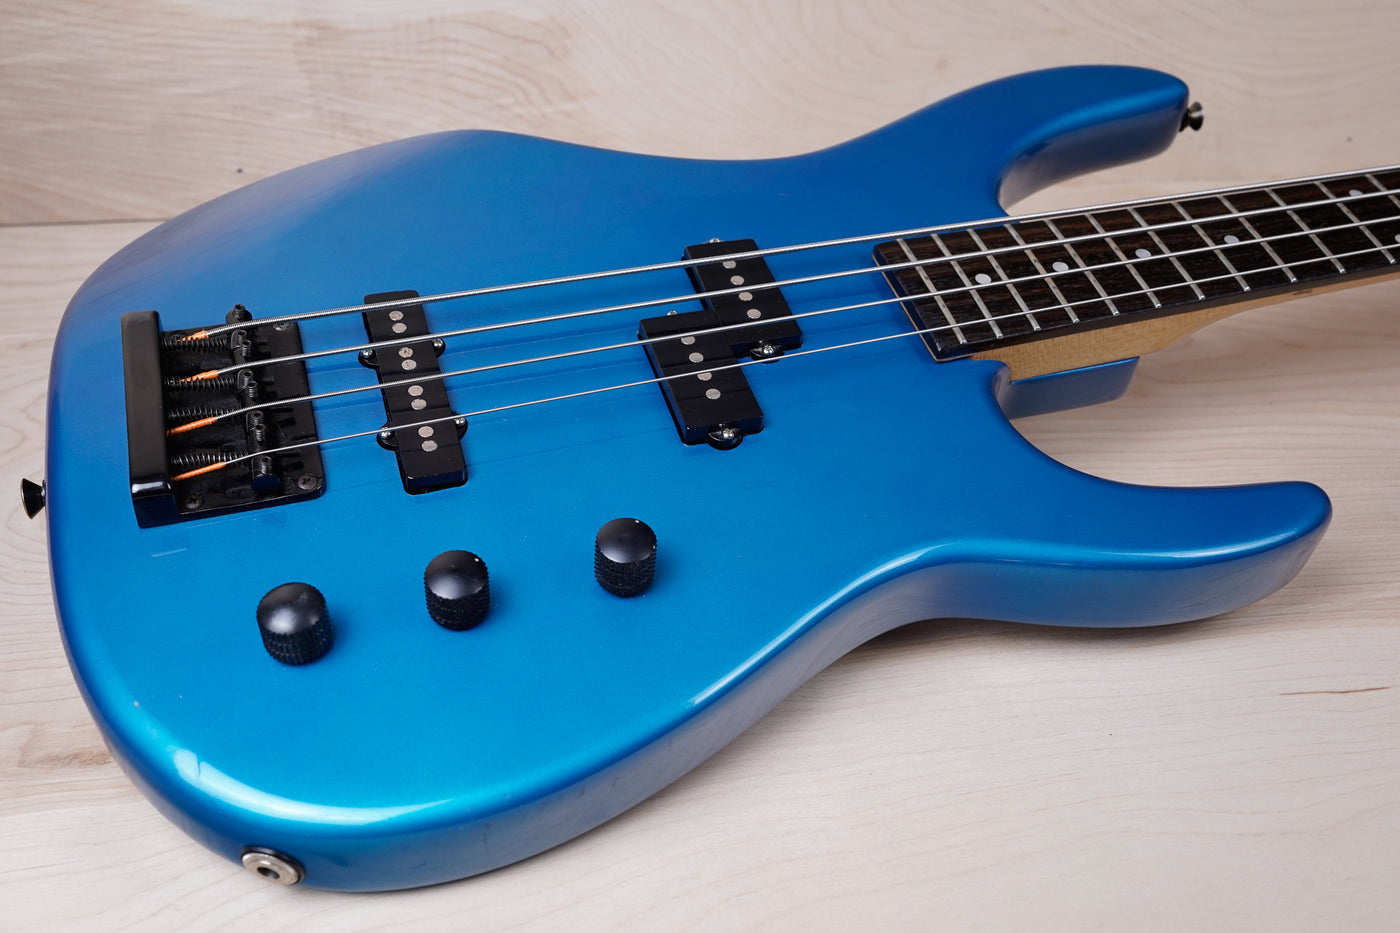 Squier HM Bass 1992 Electric Blue PJ HM4 IV w/ Bag